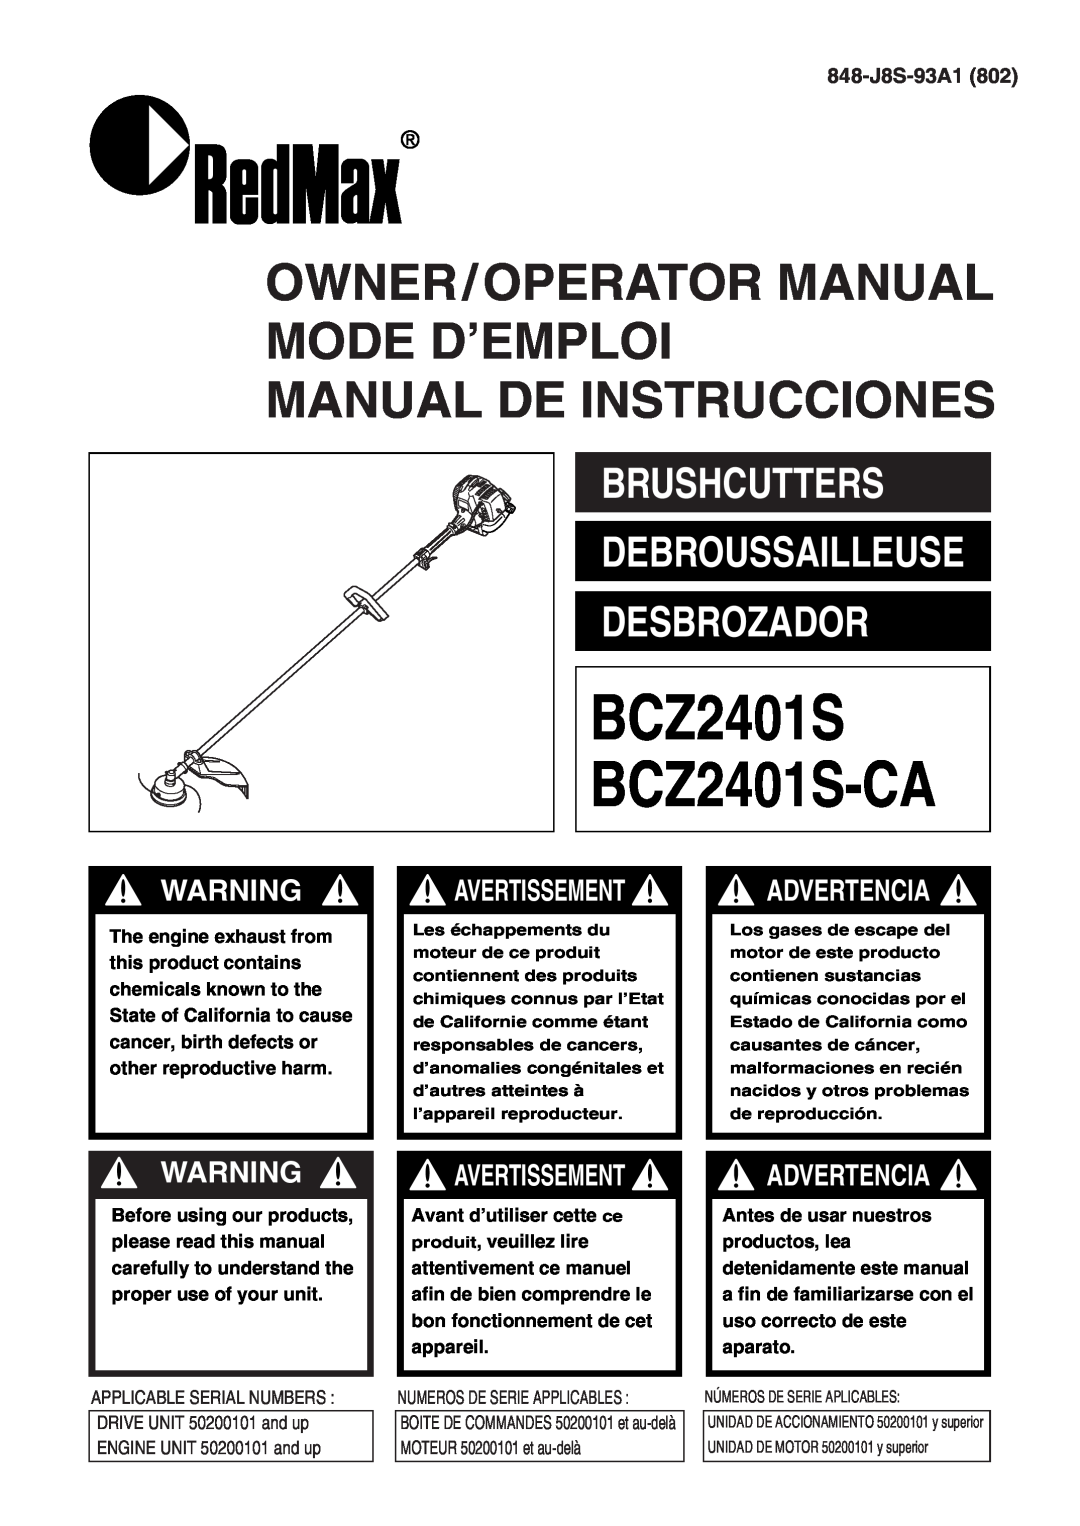 RedMax manual 848-J8S-93A1, BCZ2401S BCZ2401S-CA, Owner/Operator Manual Mode D’Emploi Manual De Instrucciones 